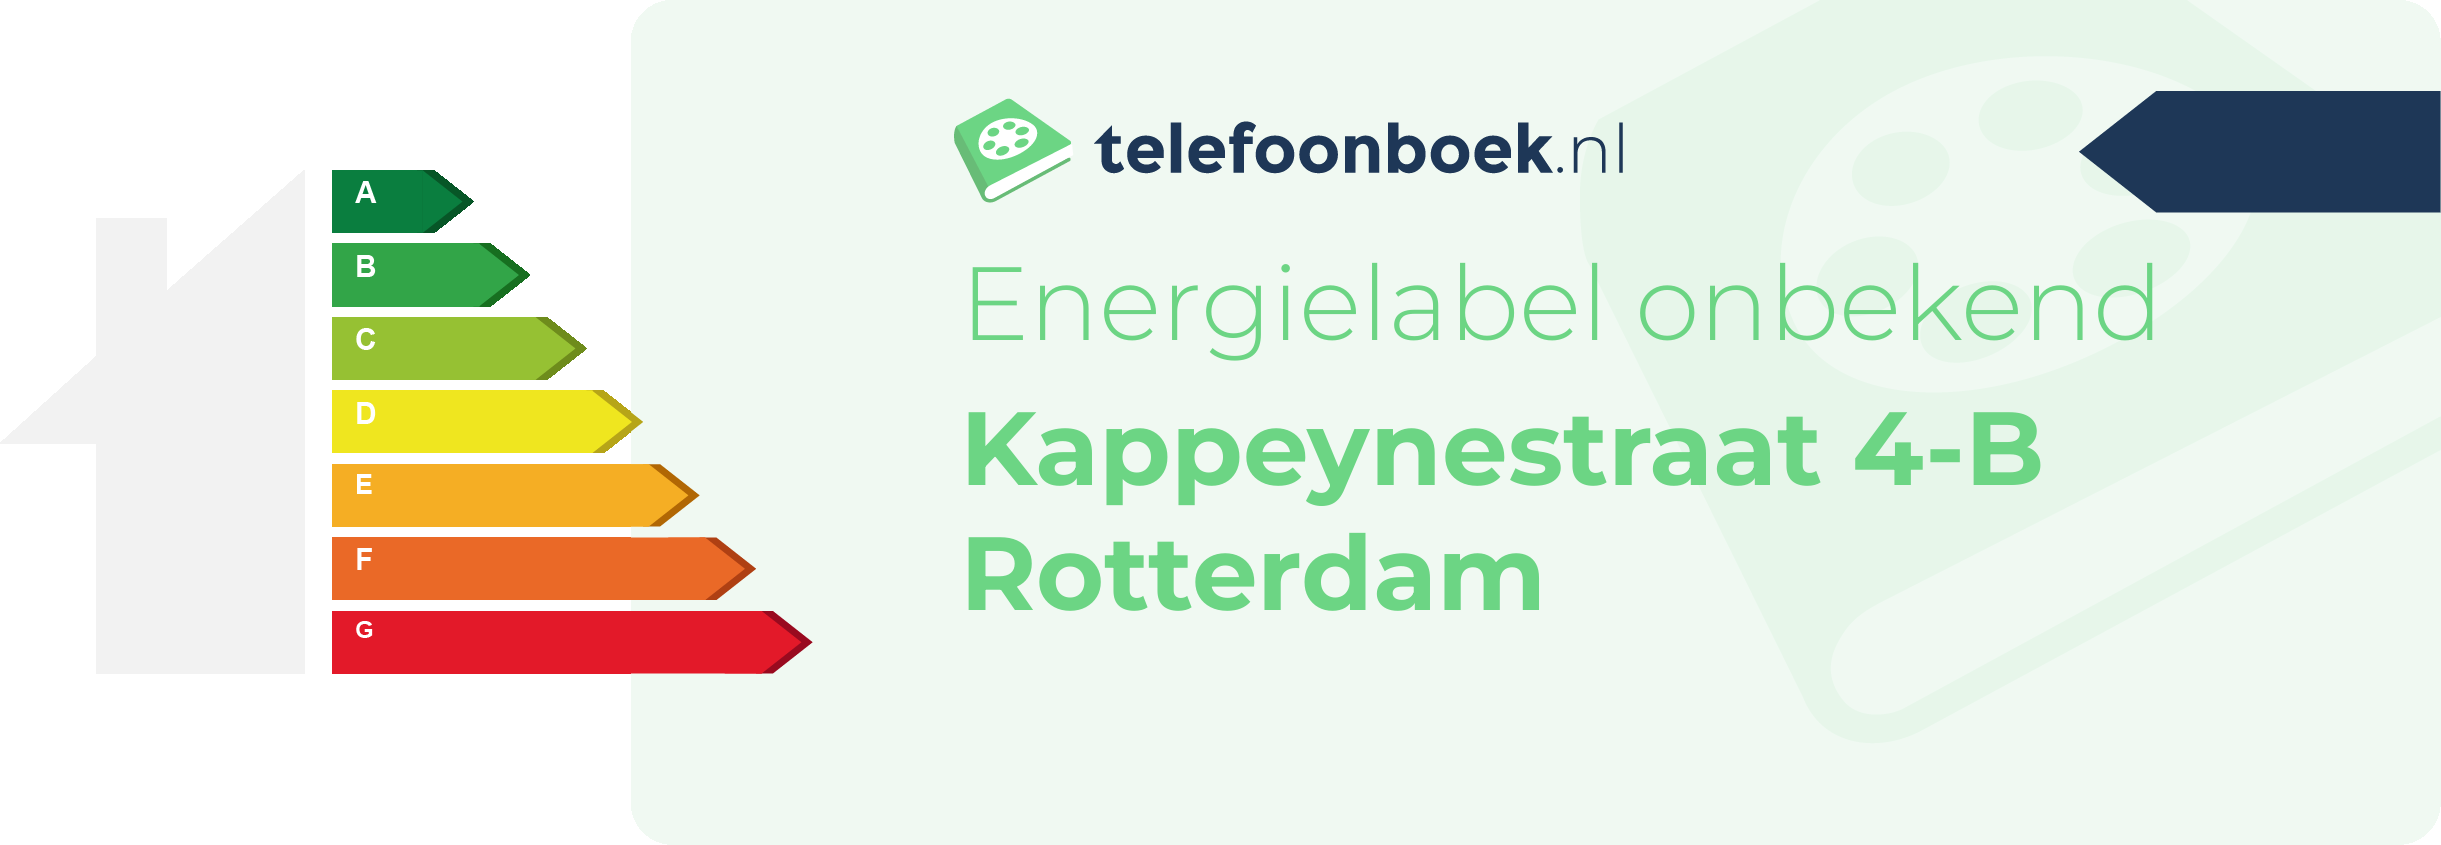 Energielabel Kappeynestraat 4-B Rotterdam